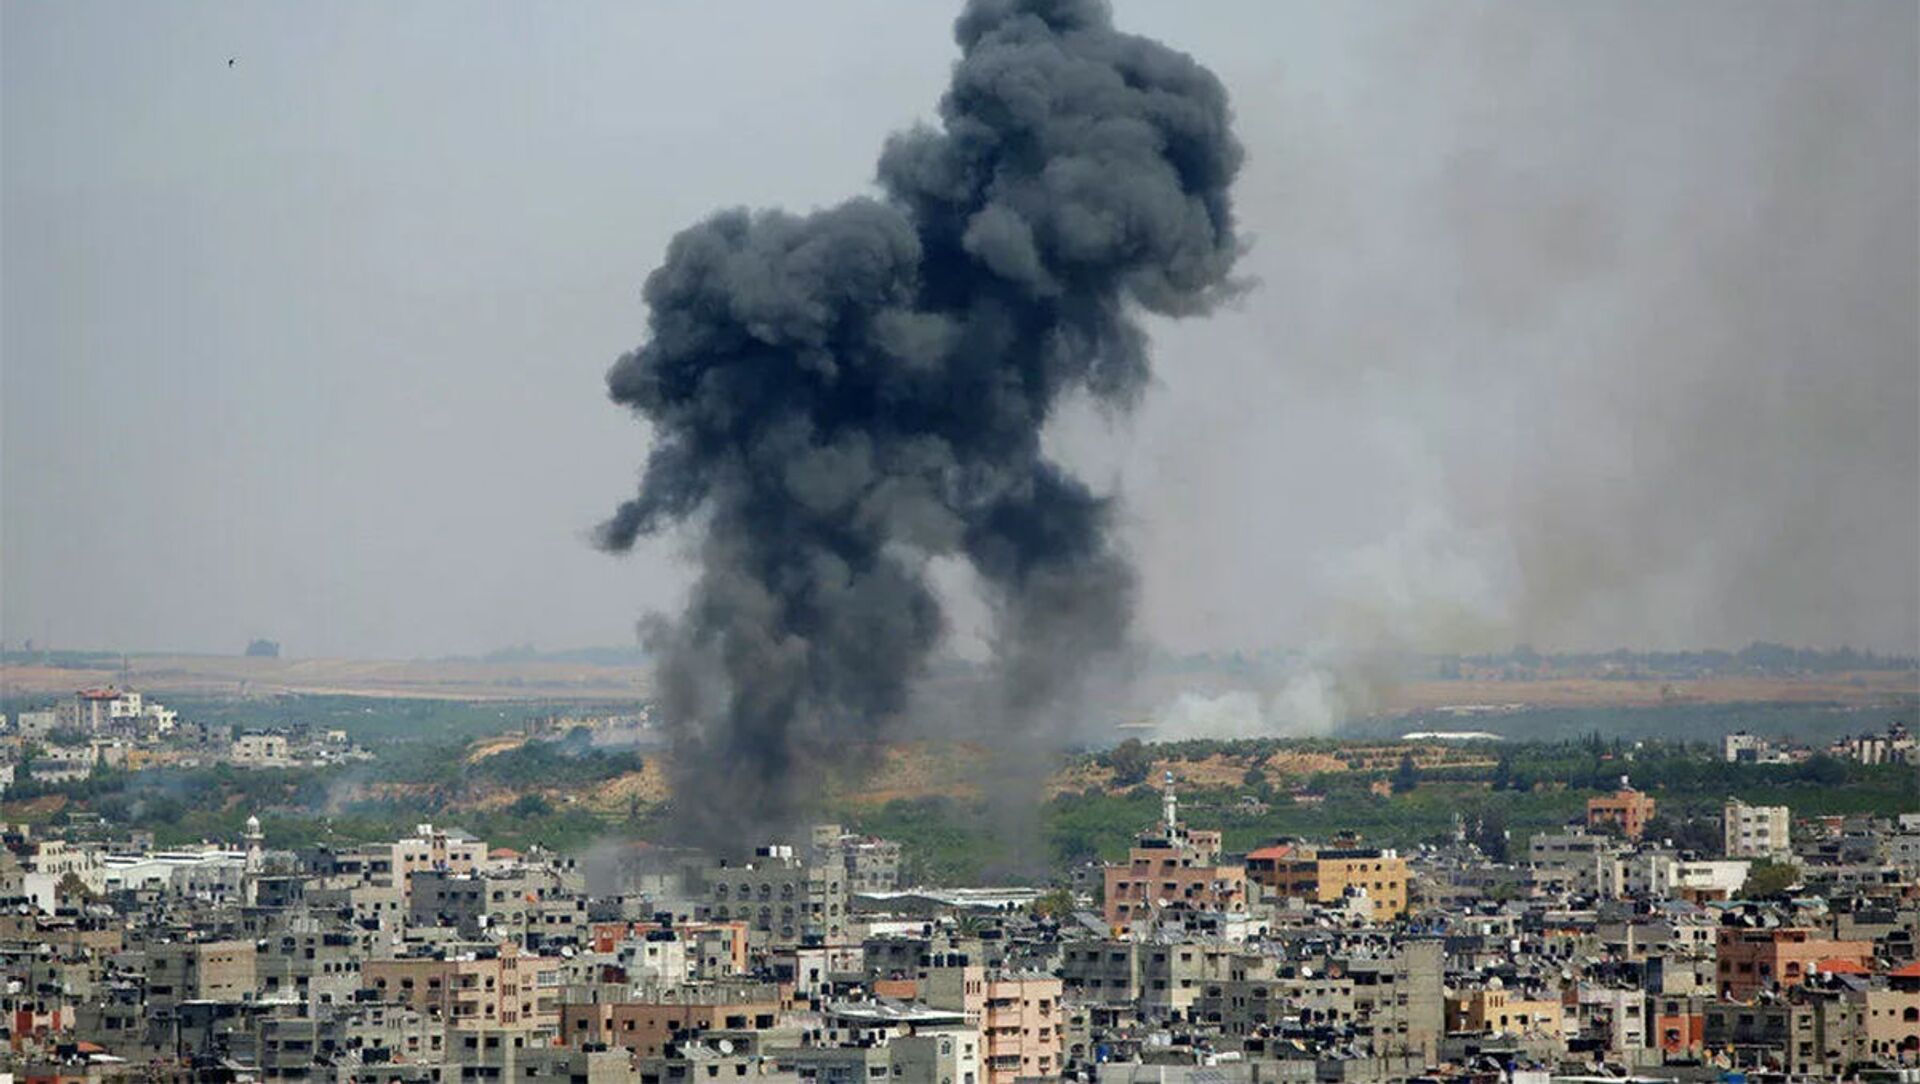 巴以冲突已造成至少65名巴勒斯坦人死亡 300多人受伤|以色列|巴勒斯坦人|巴以冲突_新浪军事_新浪网